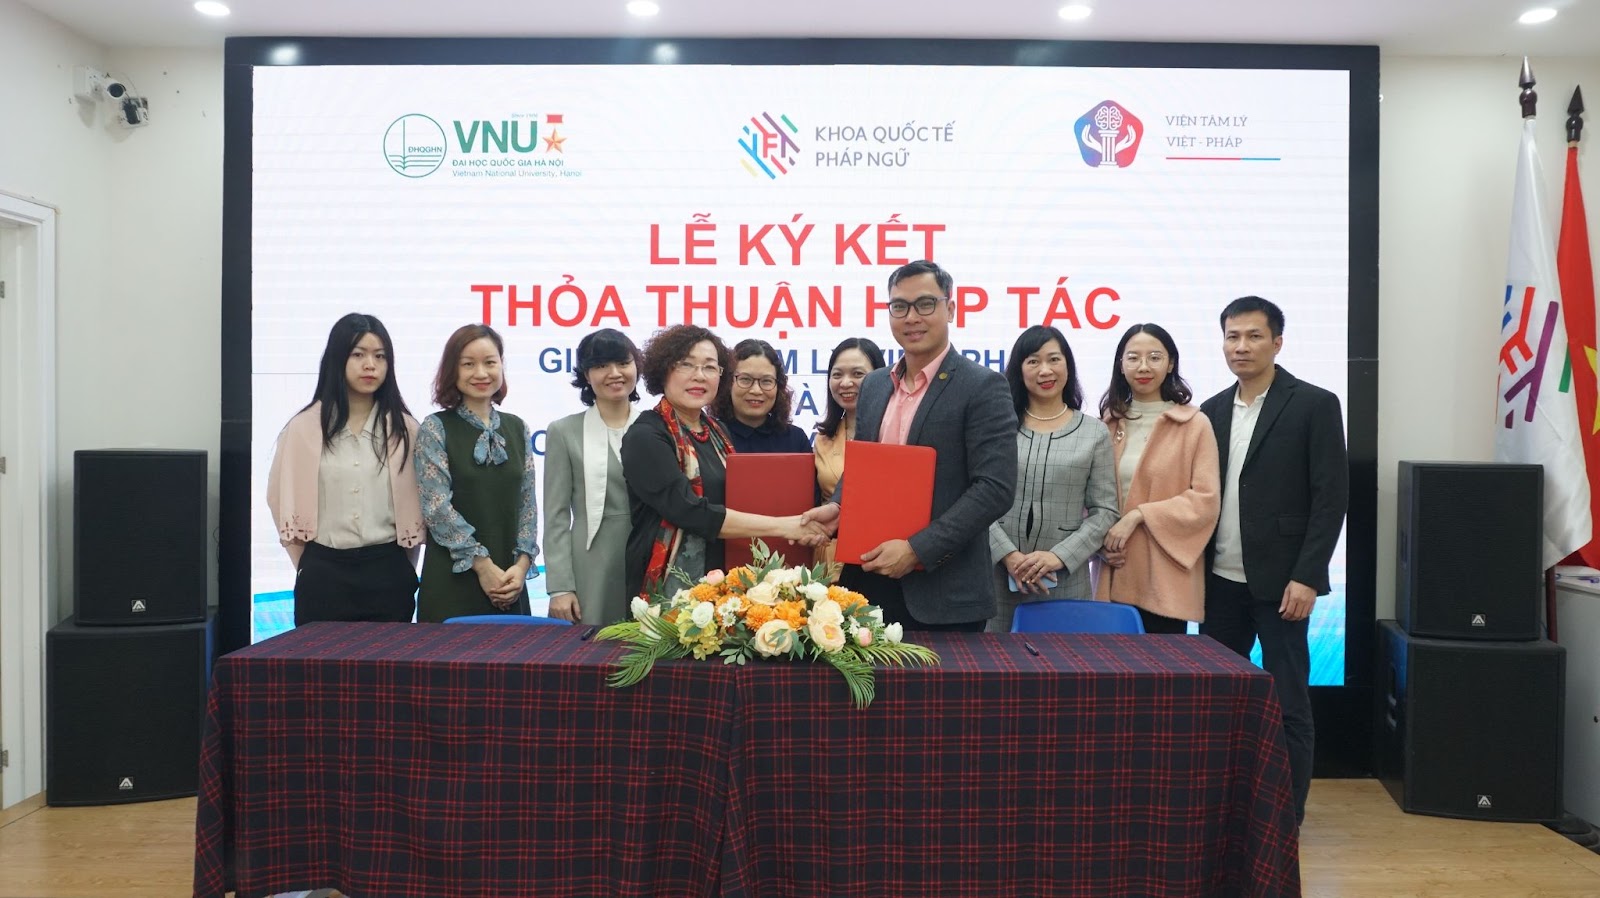 Lễ ký kết Thỏa thuận hợp tác giữa IFI và Viện Tâm lý Việt Pháp